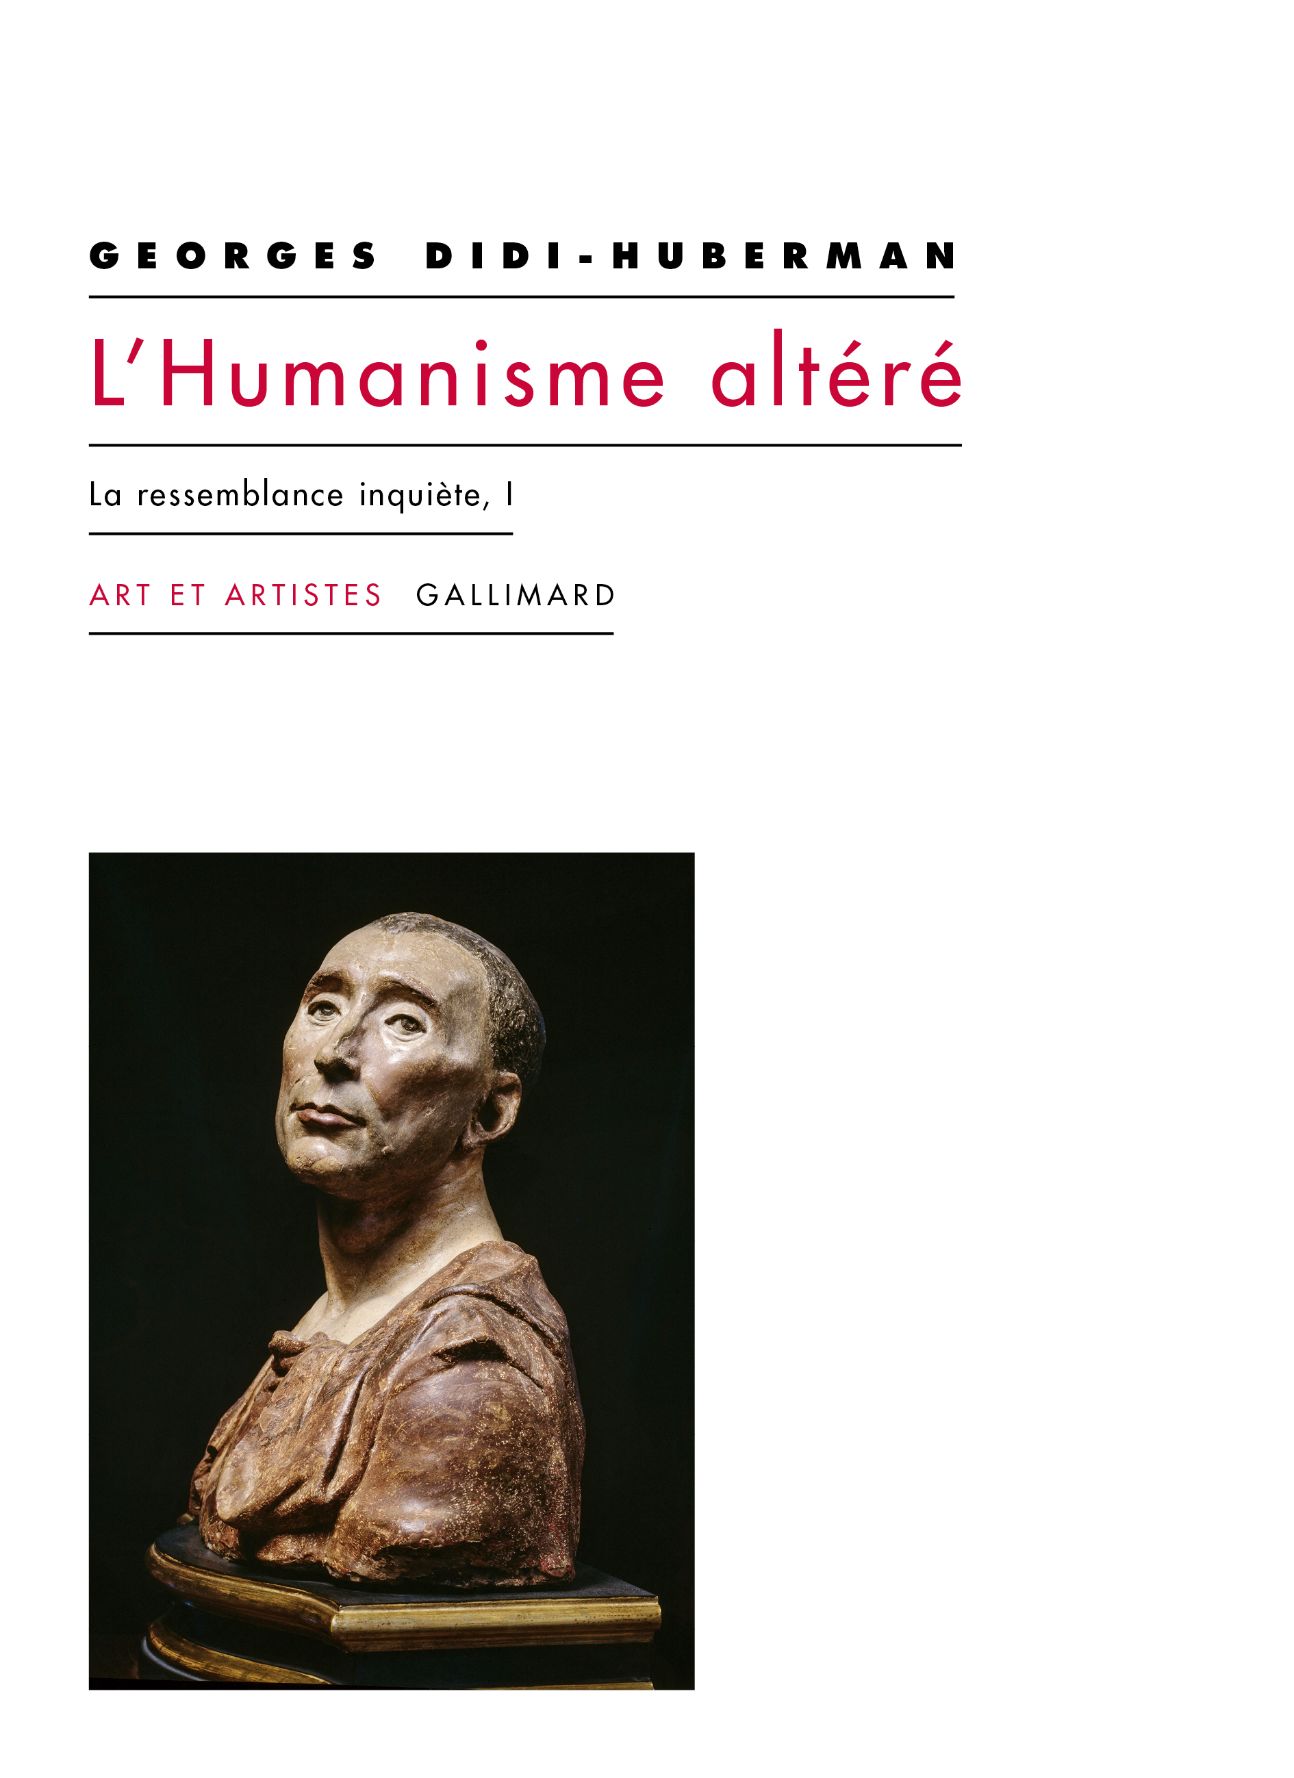 Georges Didi-Huberman, L'humanisme altéré. La ressemblance inquiète, I